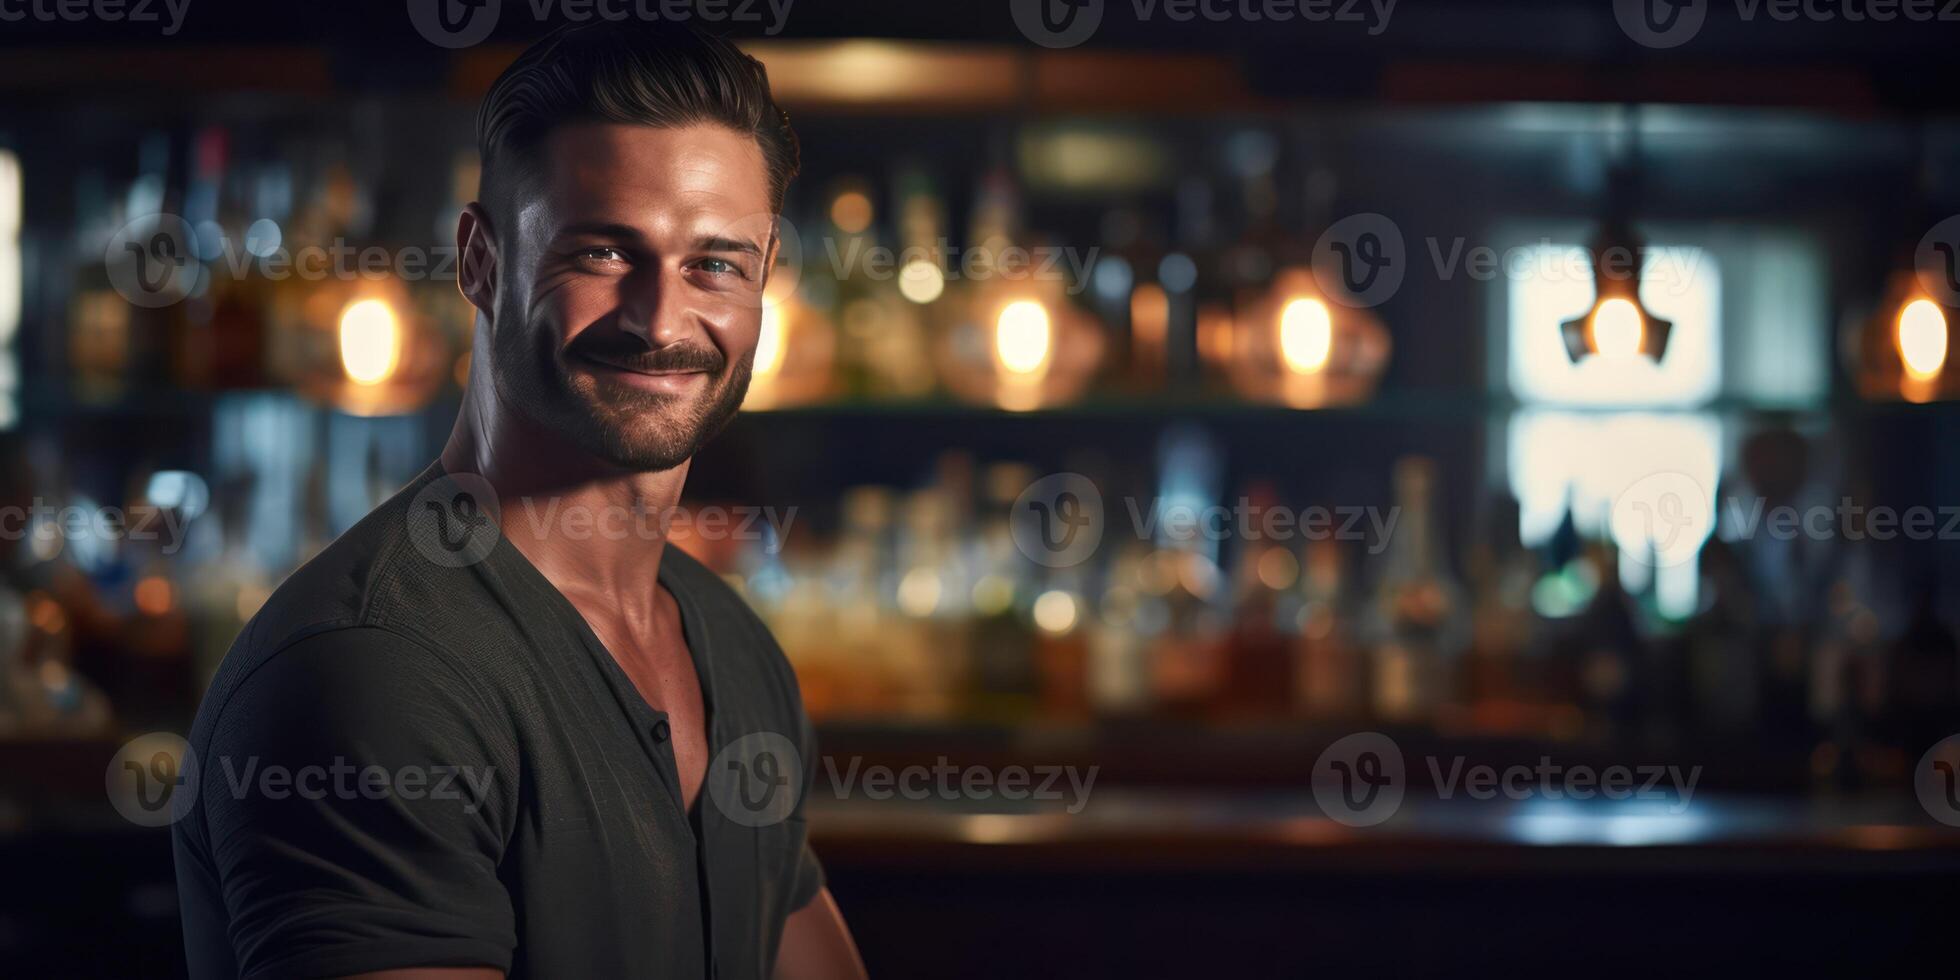 ai gerado pronto e confiante, masculino bartenders vestem brilhante sorrisos foto